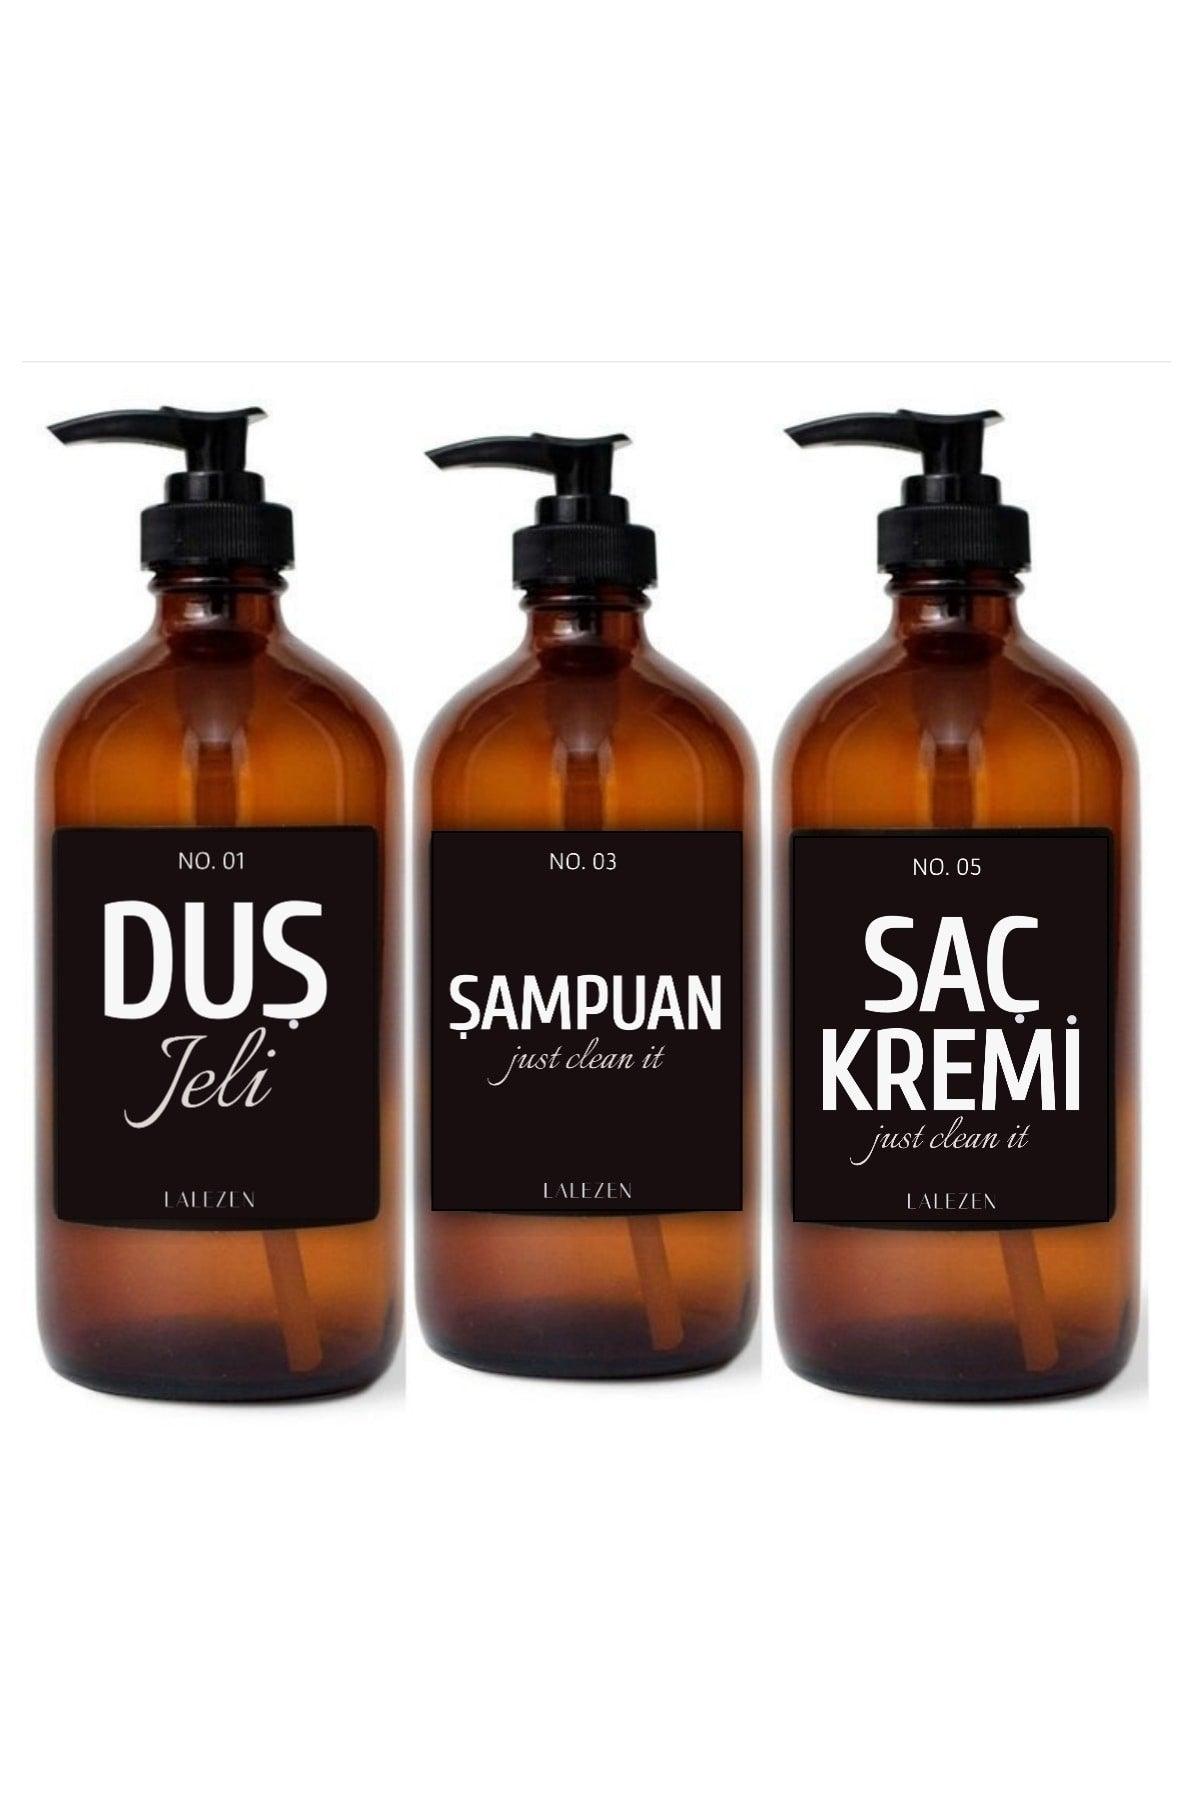 Black Shower Gel Conditioner Shampoo Set of 3 Amber Glass Bottles With Label - Swordslife